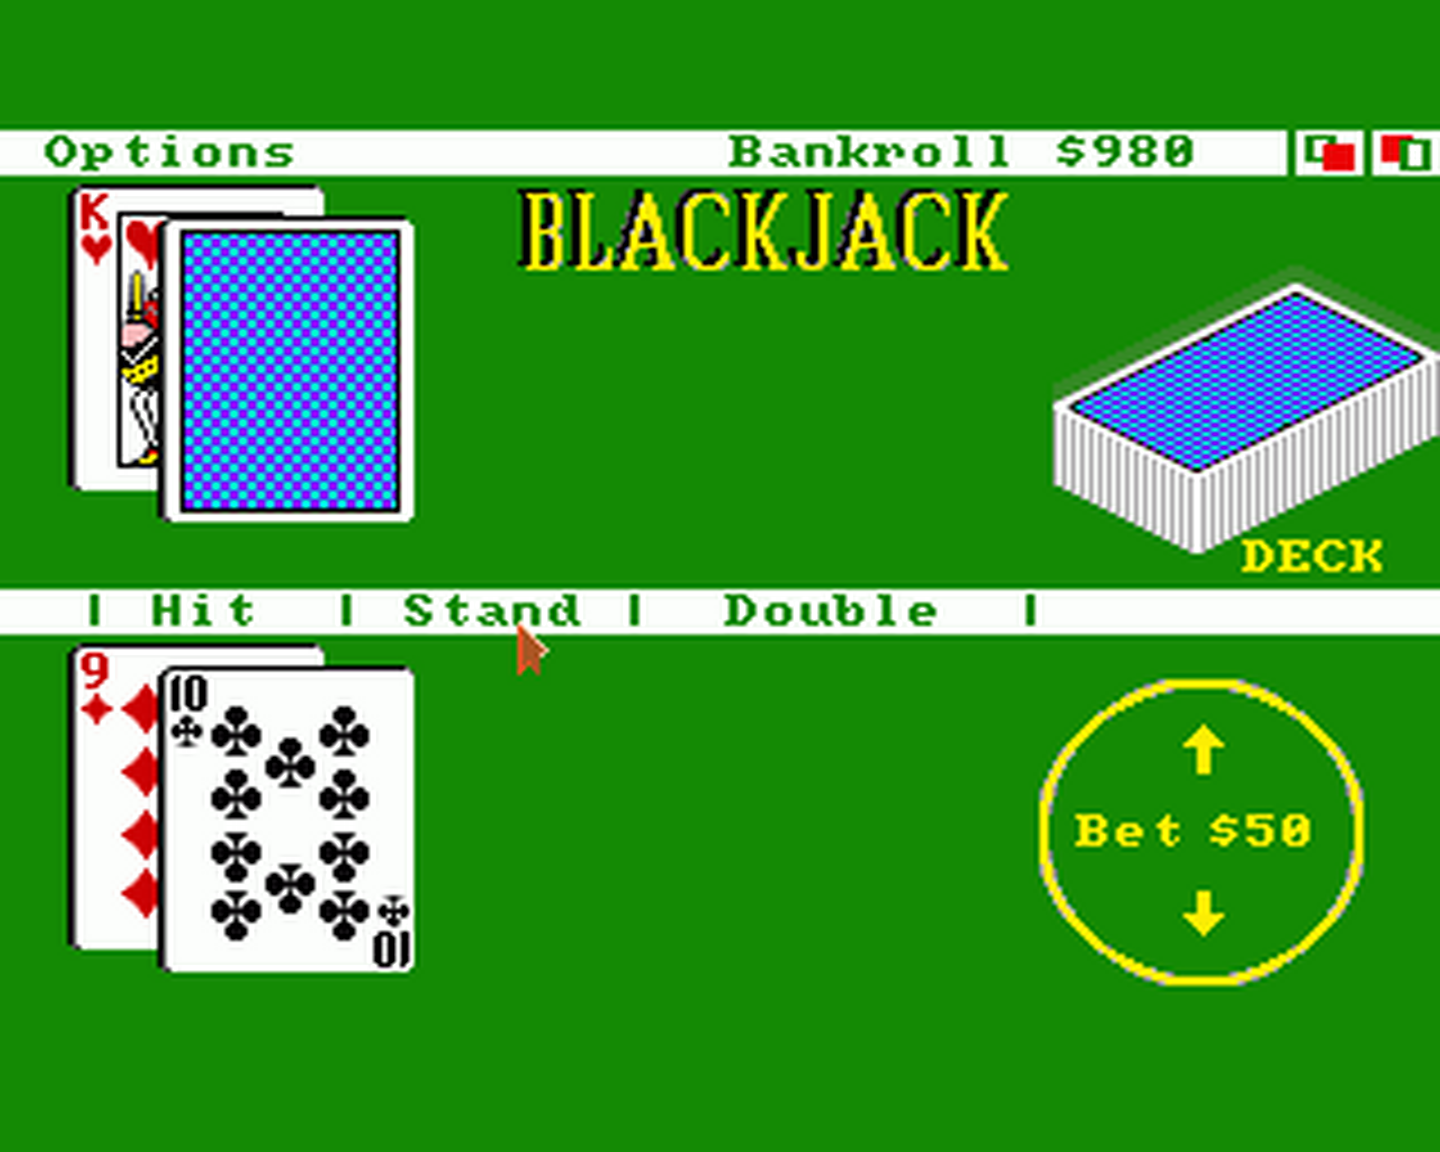 Amiga GameBase Video_Vegas Baudville 1986